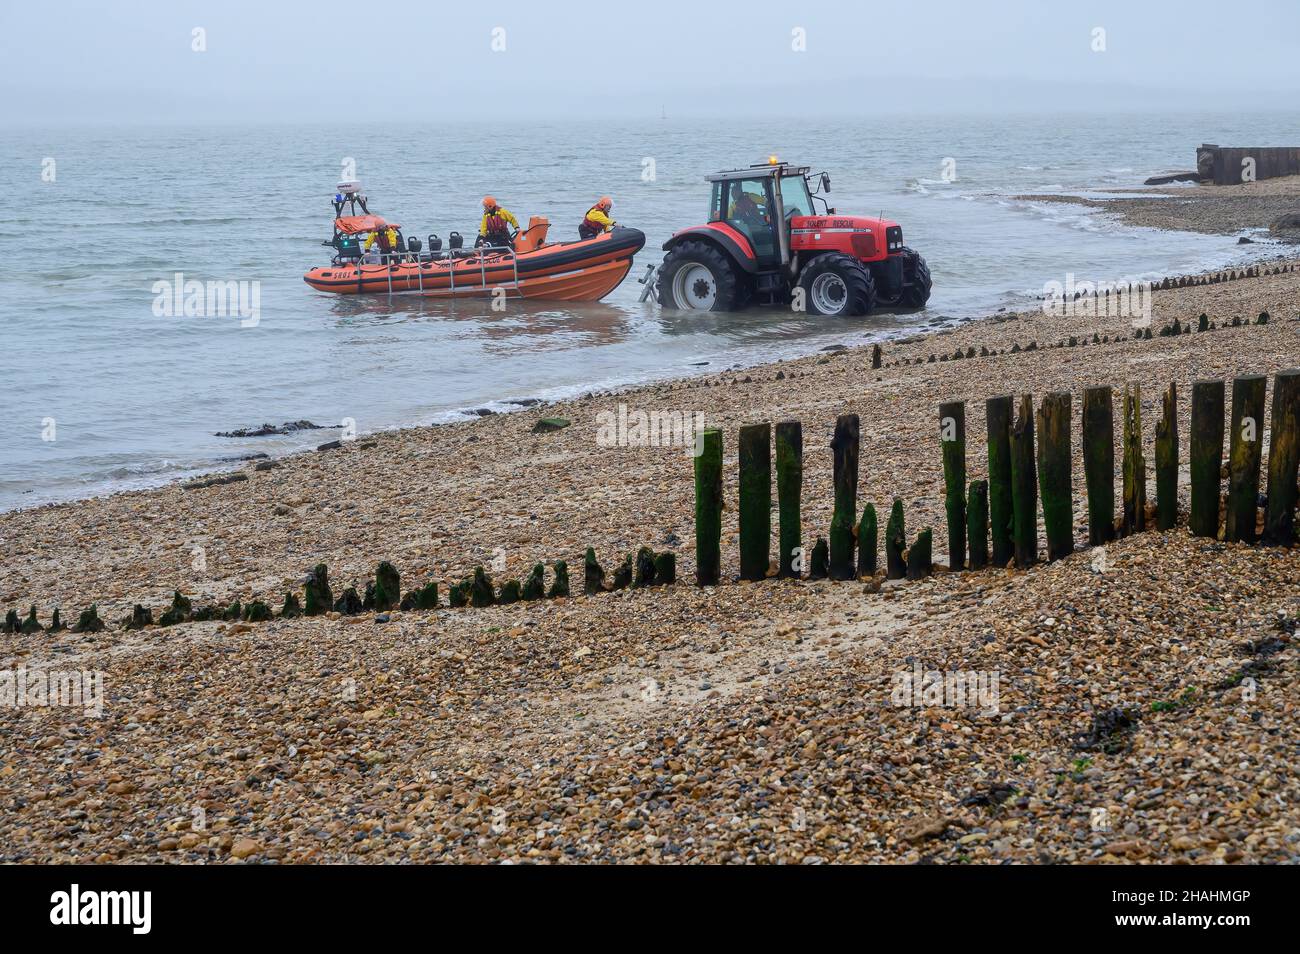 Tracteur rouge abaissant le bateau de sauvetage Solent dans la mer depuis la rive de galets et les groynes en bois lors d'une matinée brumeuse à la plage de Lepe.Lepe Country Park. Banque D'Images